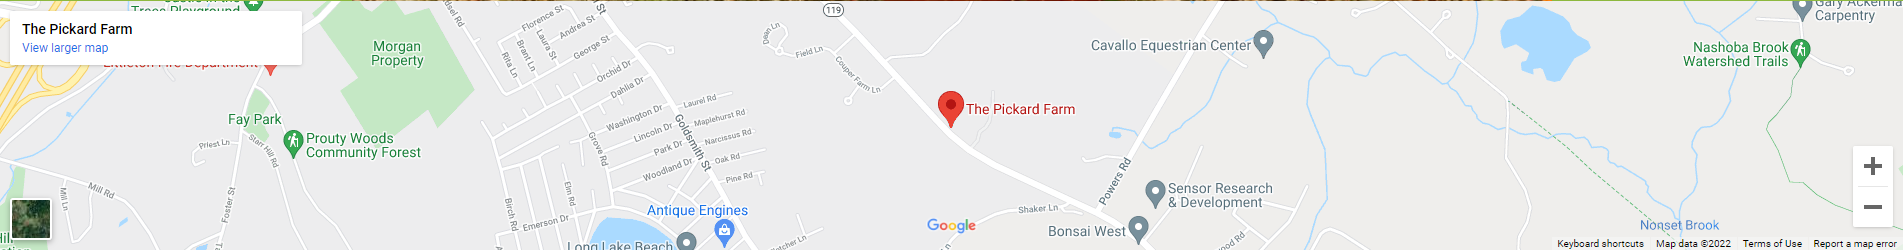 Pickard Farm